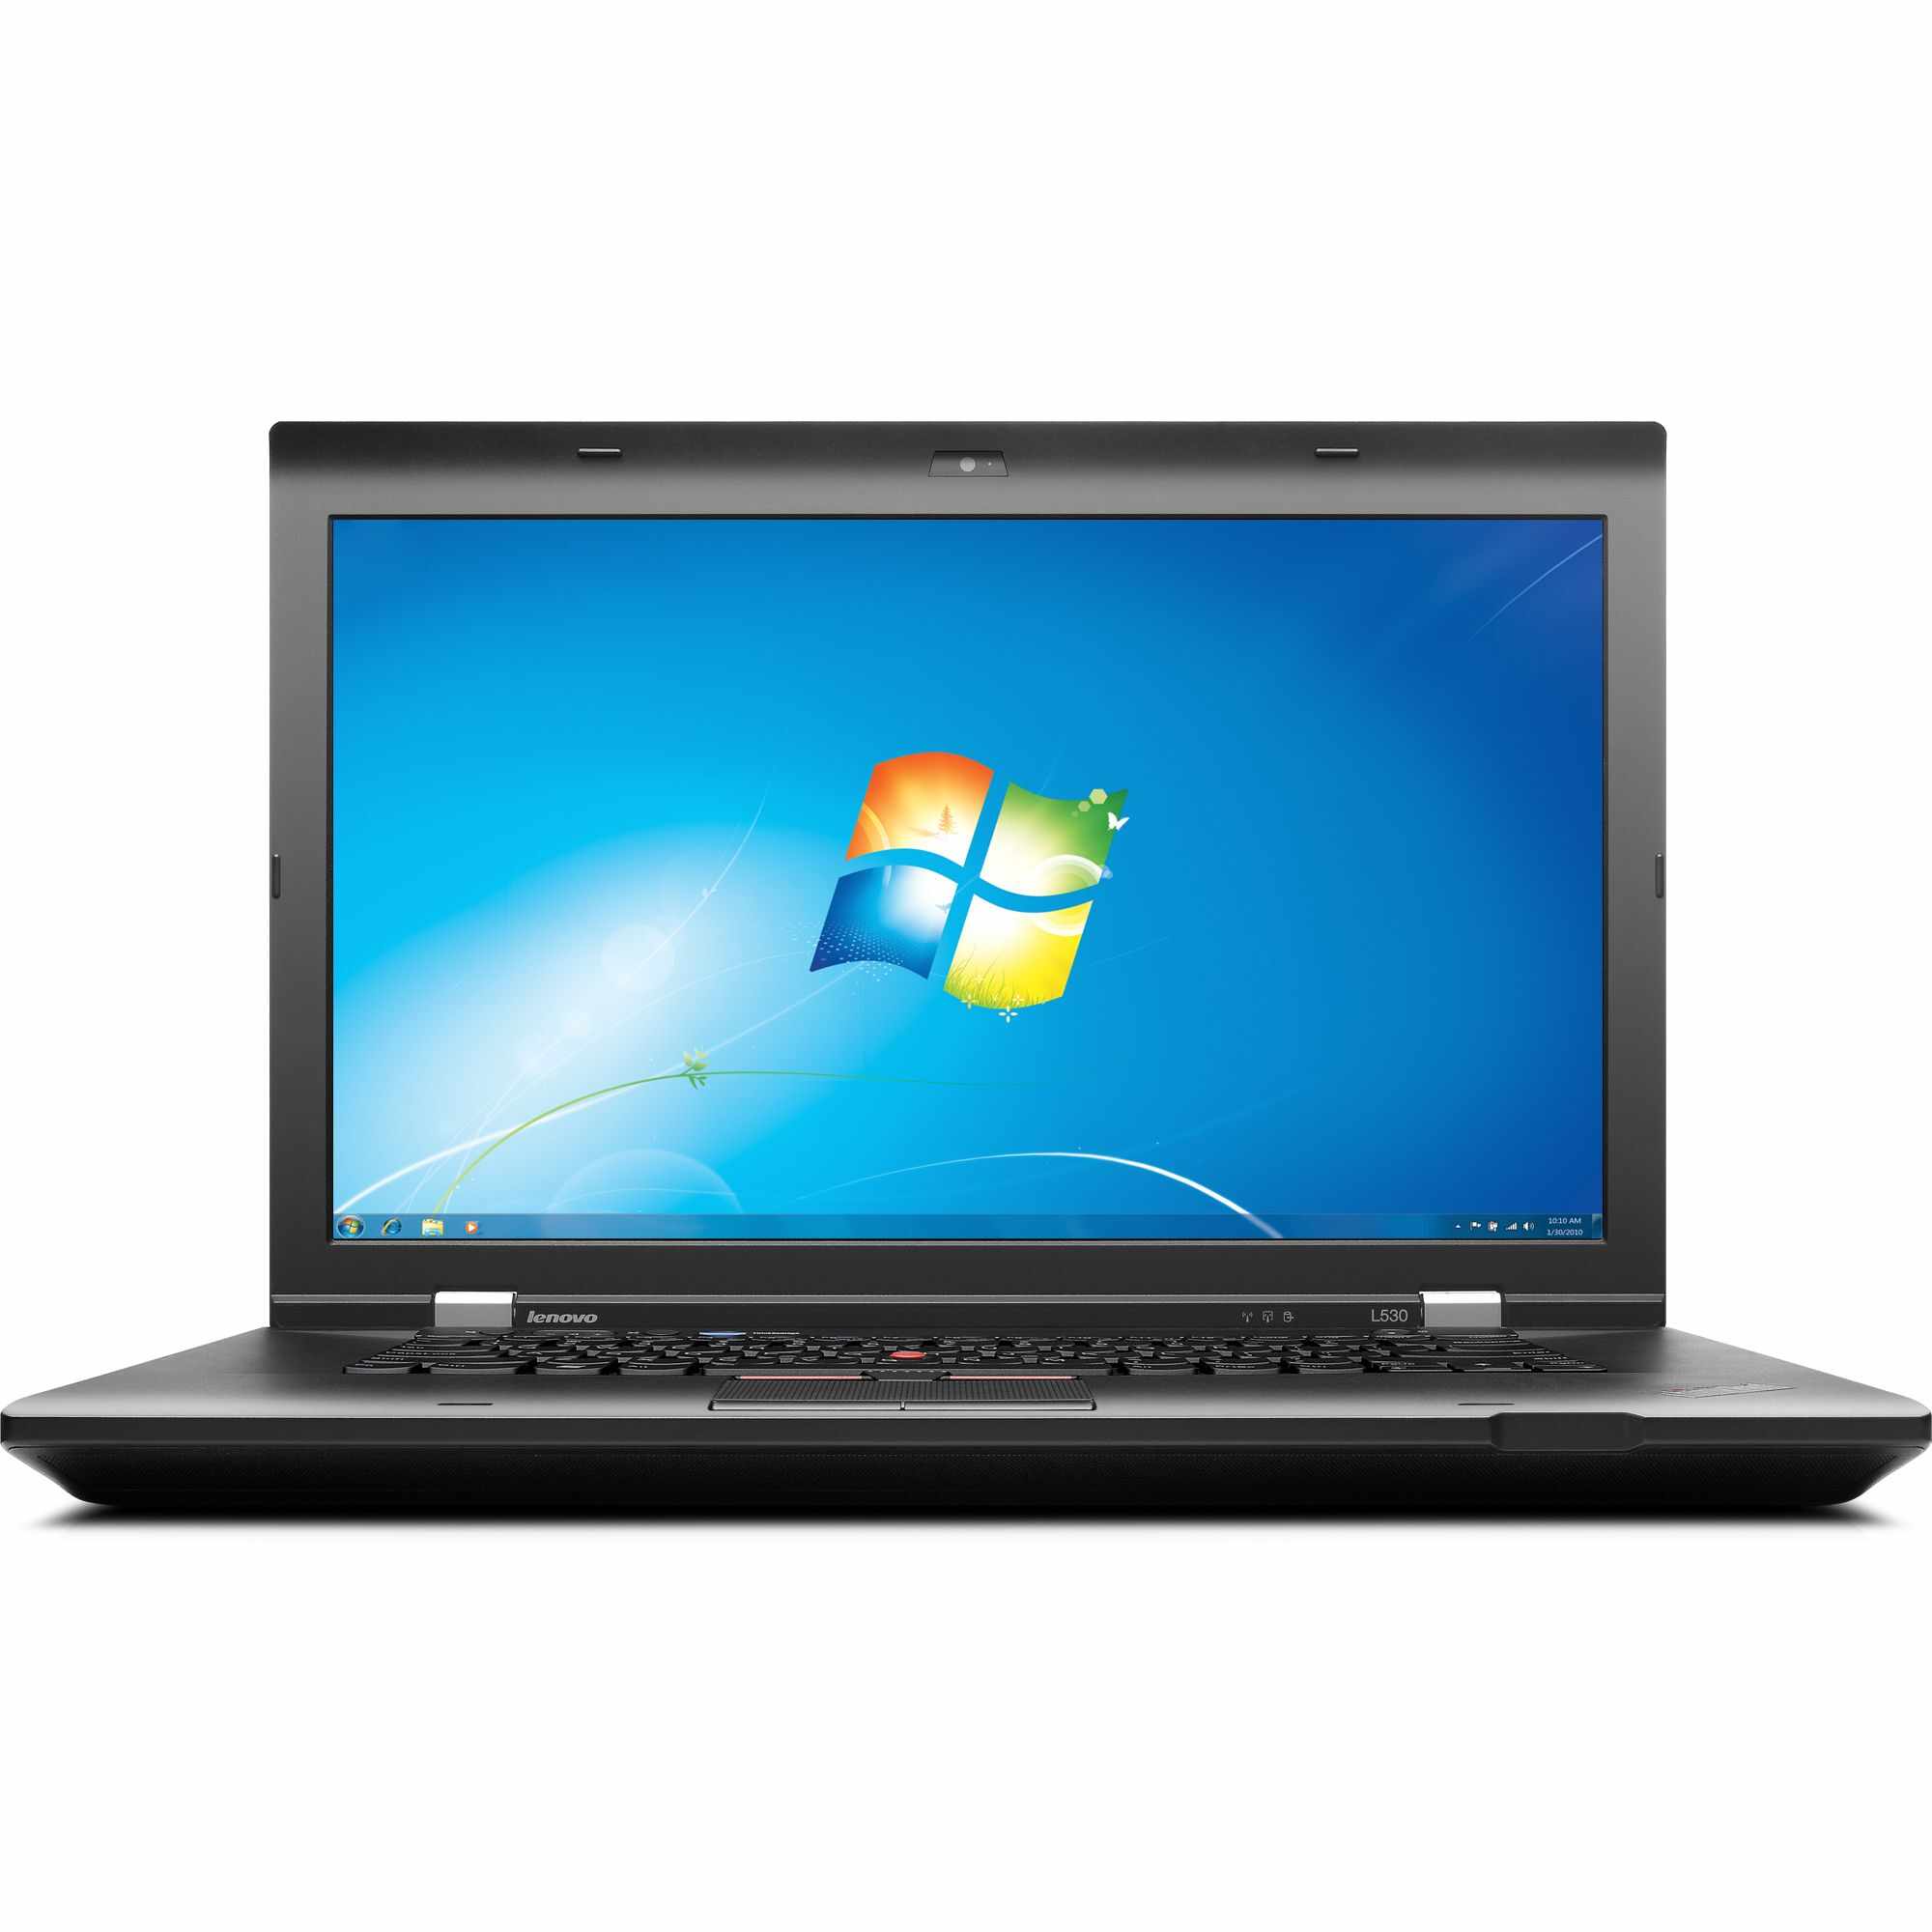 Laptop LENOVO ThinkPad L530, Intel Core i3-3110M 2.40GHz, 4GB DDR3, 120GB SSD, DVD-RW, 15.6 Inch, Webcam